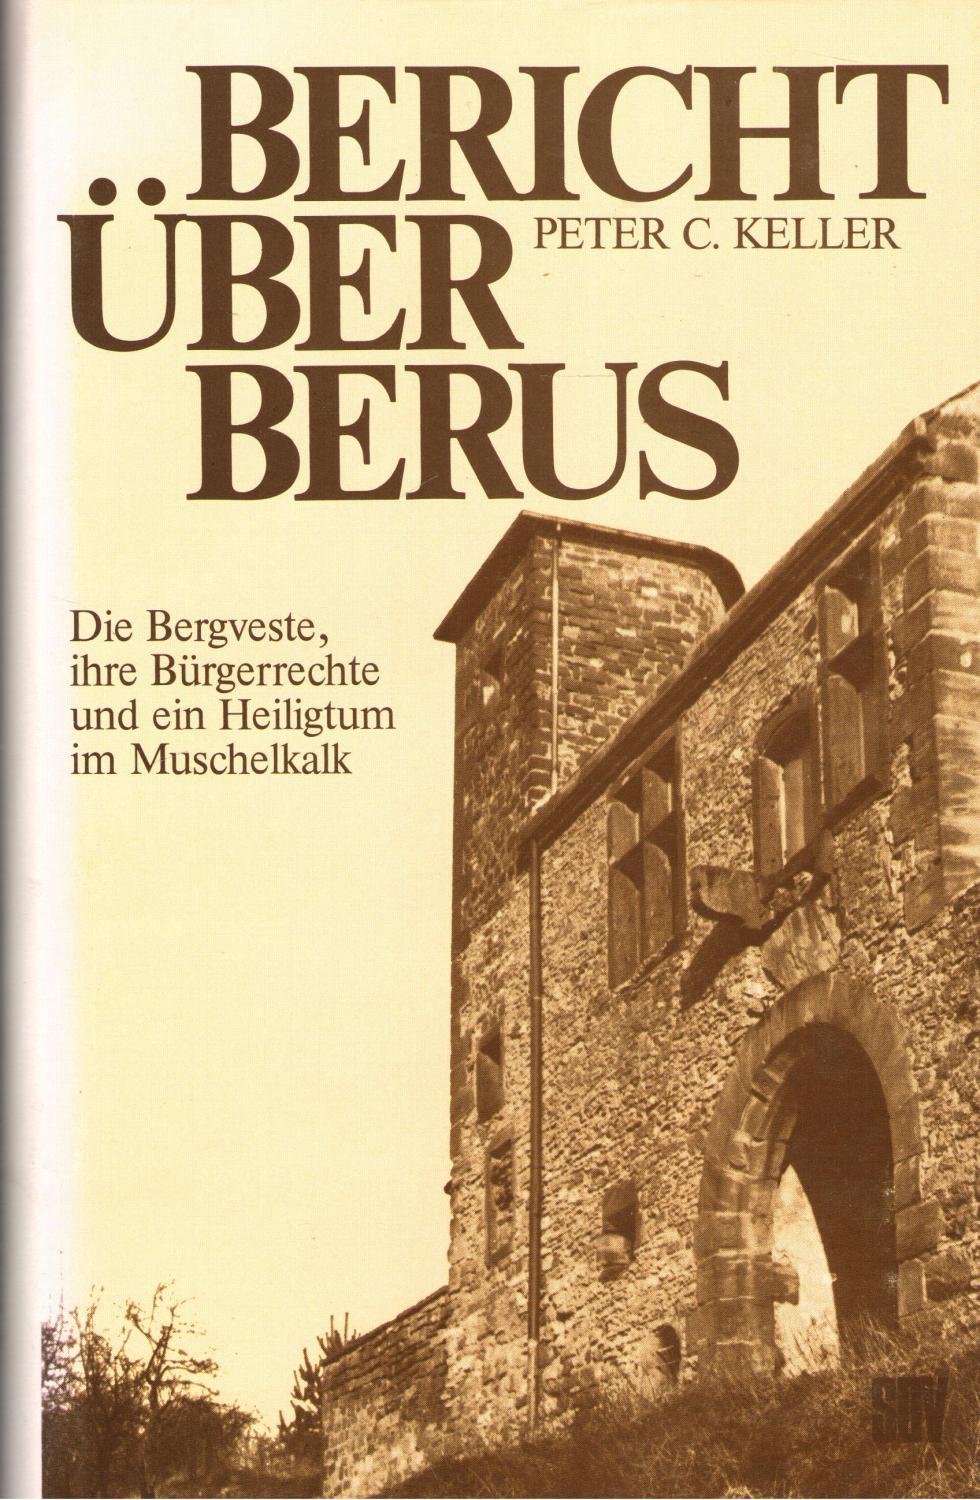 Bericht uber Berus: Die Bergveste, ihre Burgerrechte und ein Heiligtum im Muschelkalk